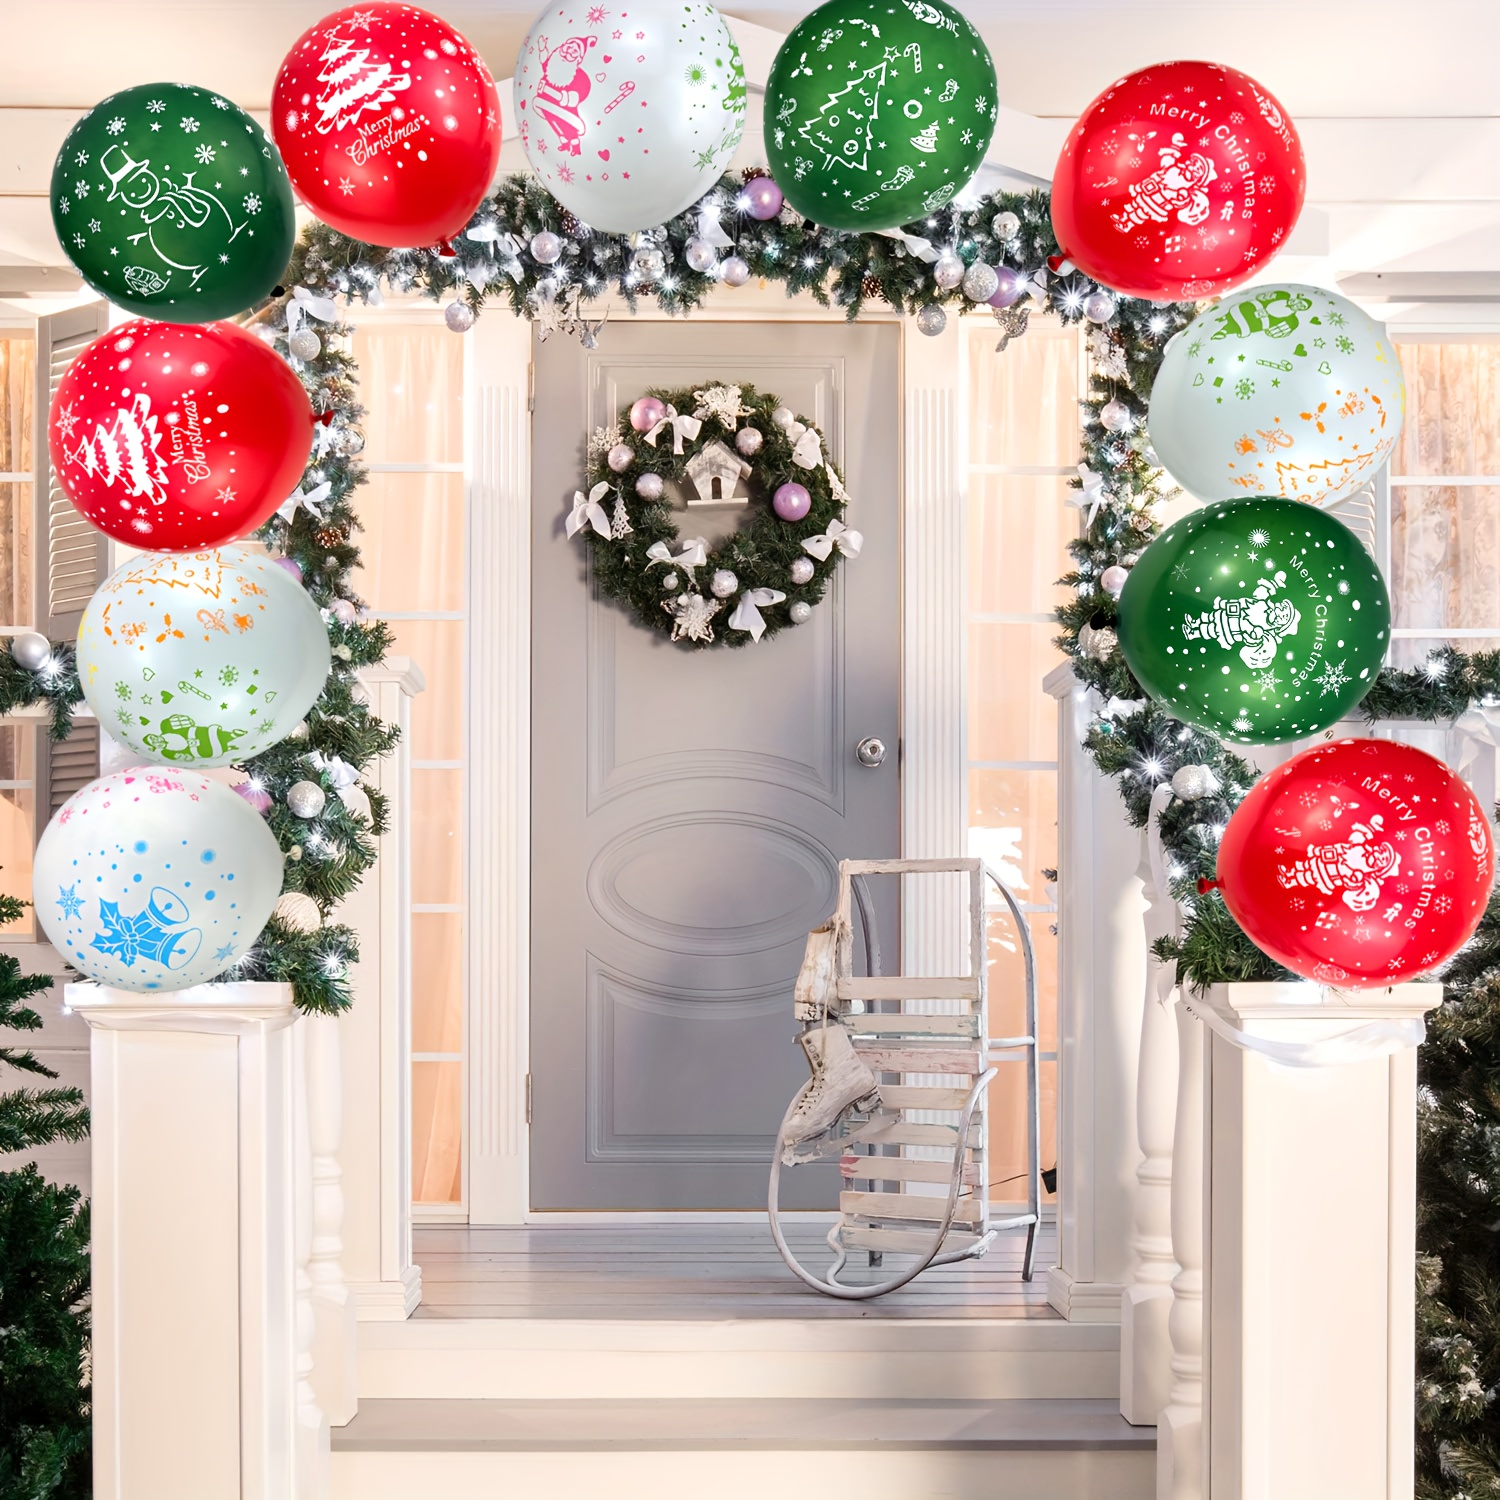 Leesgel Ballon Noel, 15Pces Ballons de Latex pour Decoration Noel  Exterieur, Decoration Noel Interieur Maison Table/Sapin/Fenetre